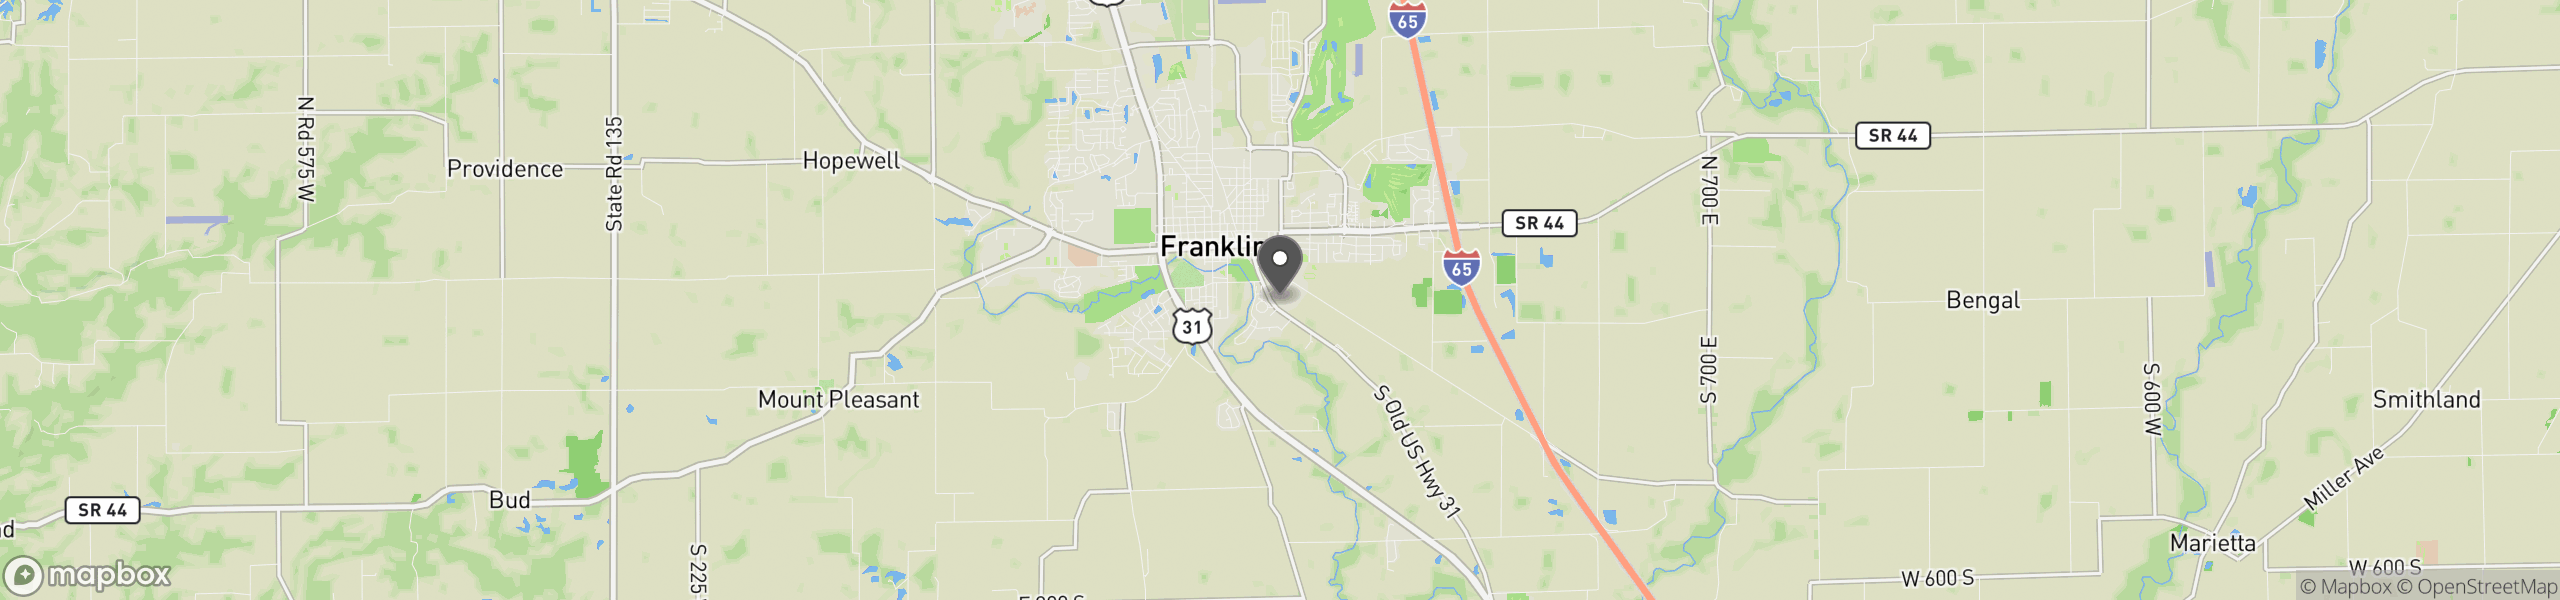 Franklin, IN